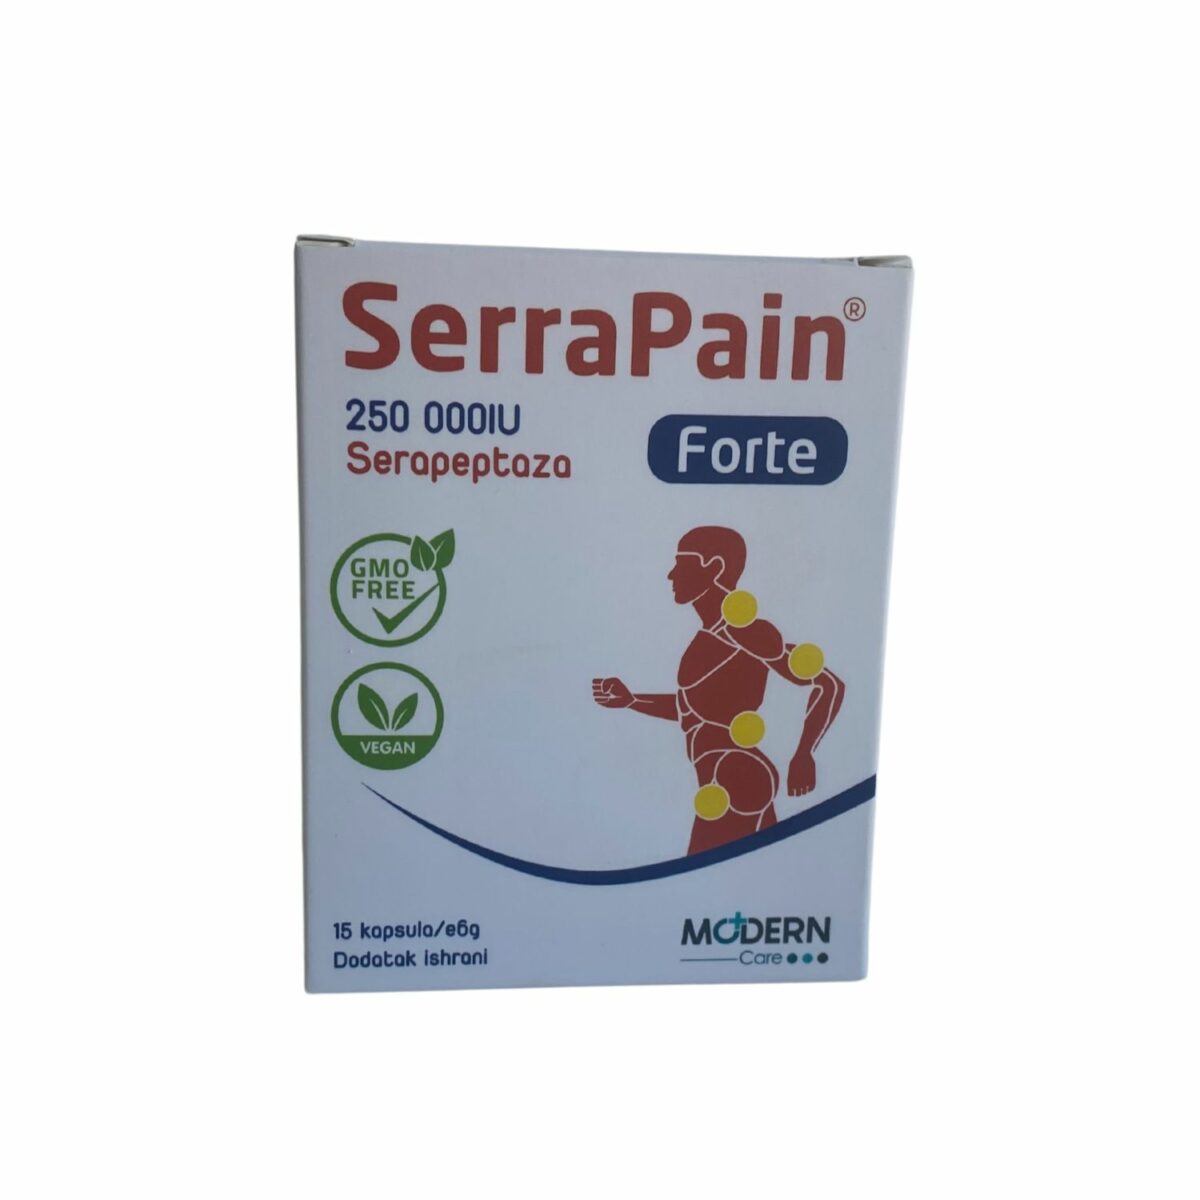 Serra Pain Forte 250 000IU 15 kapsula